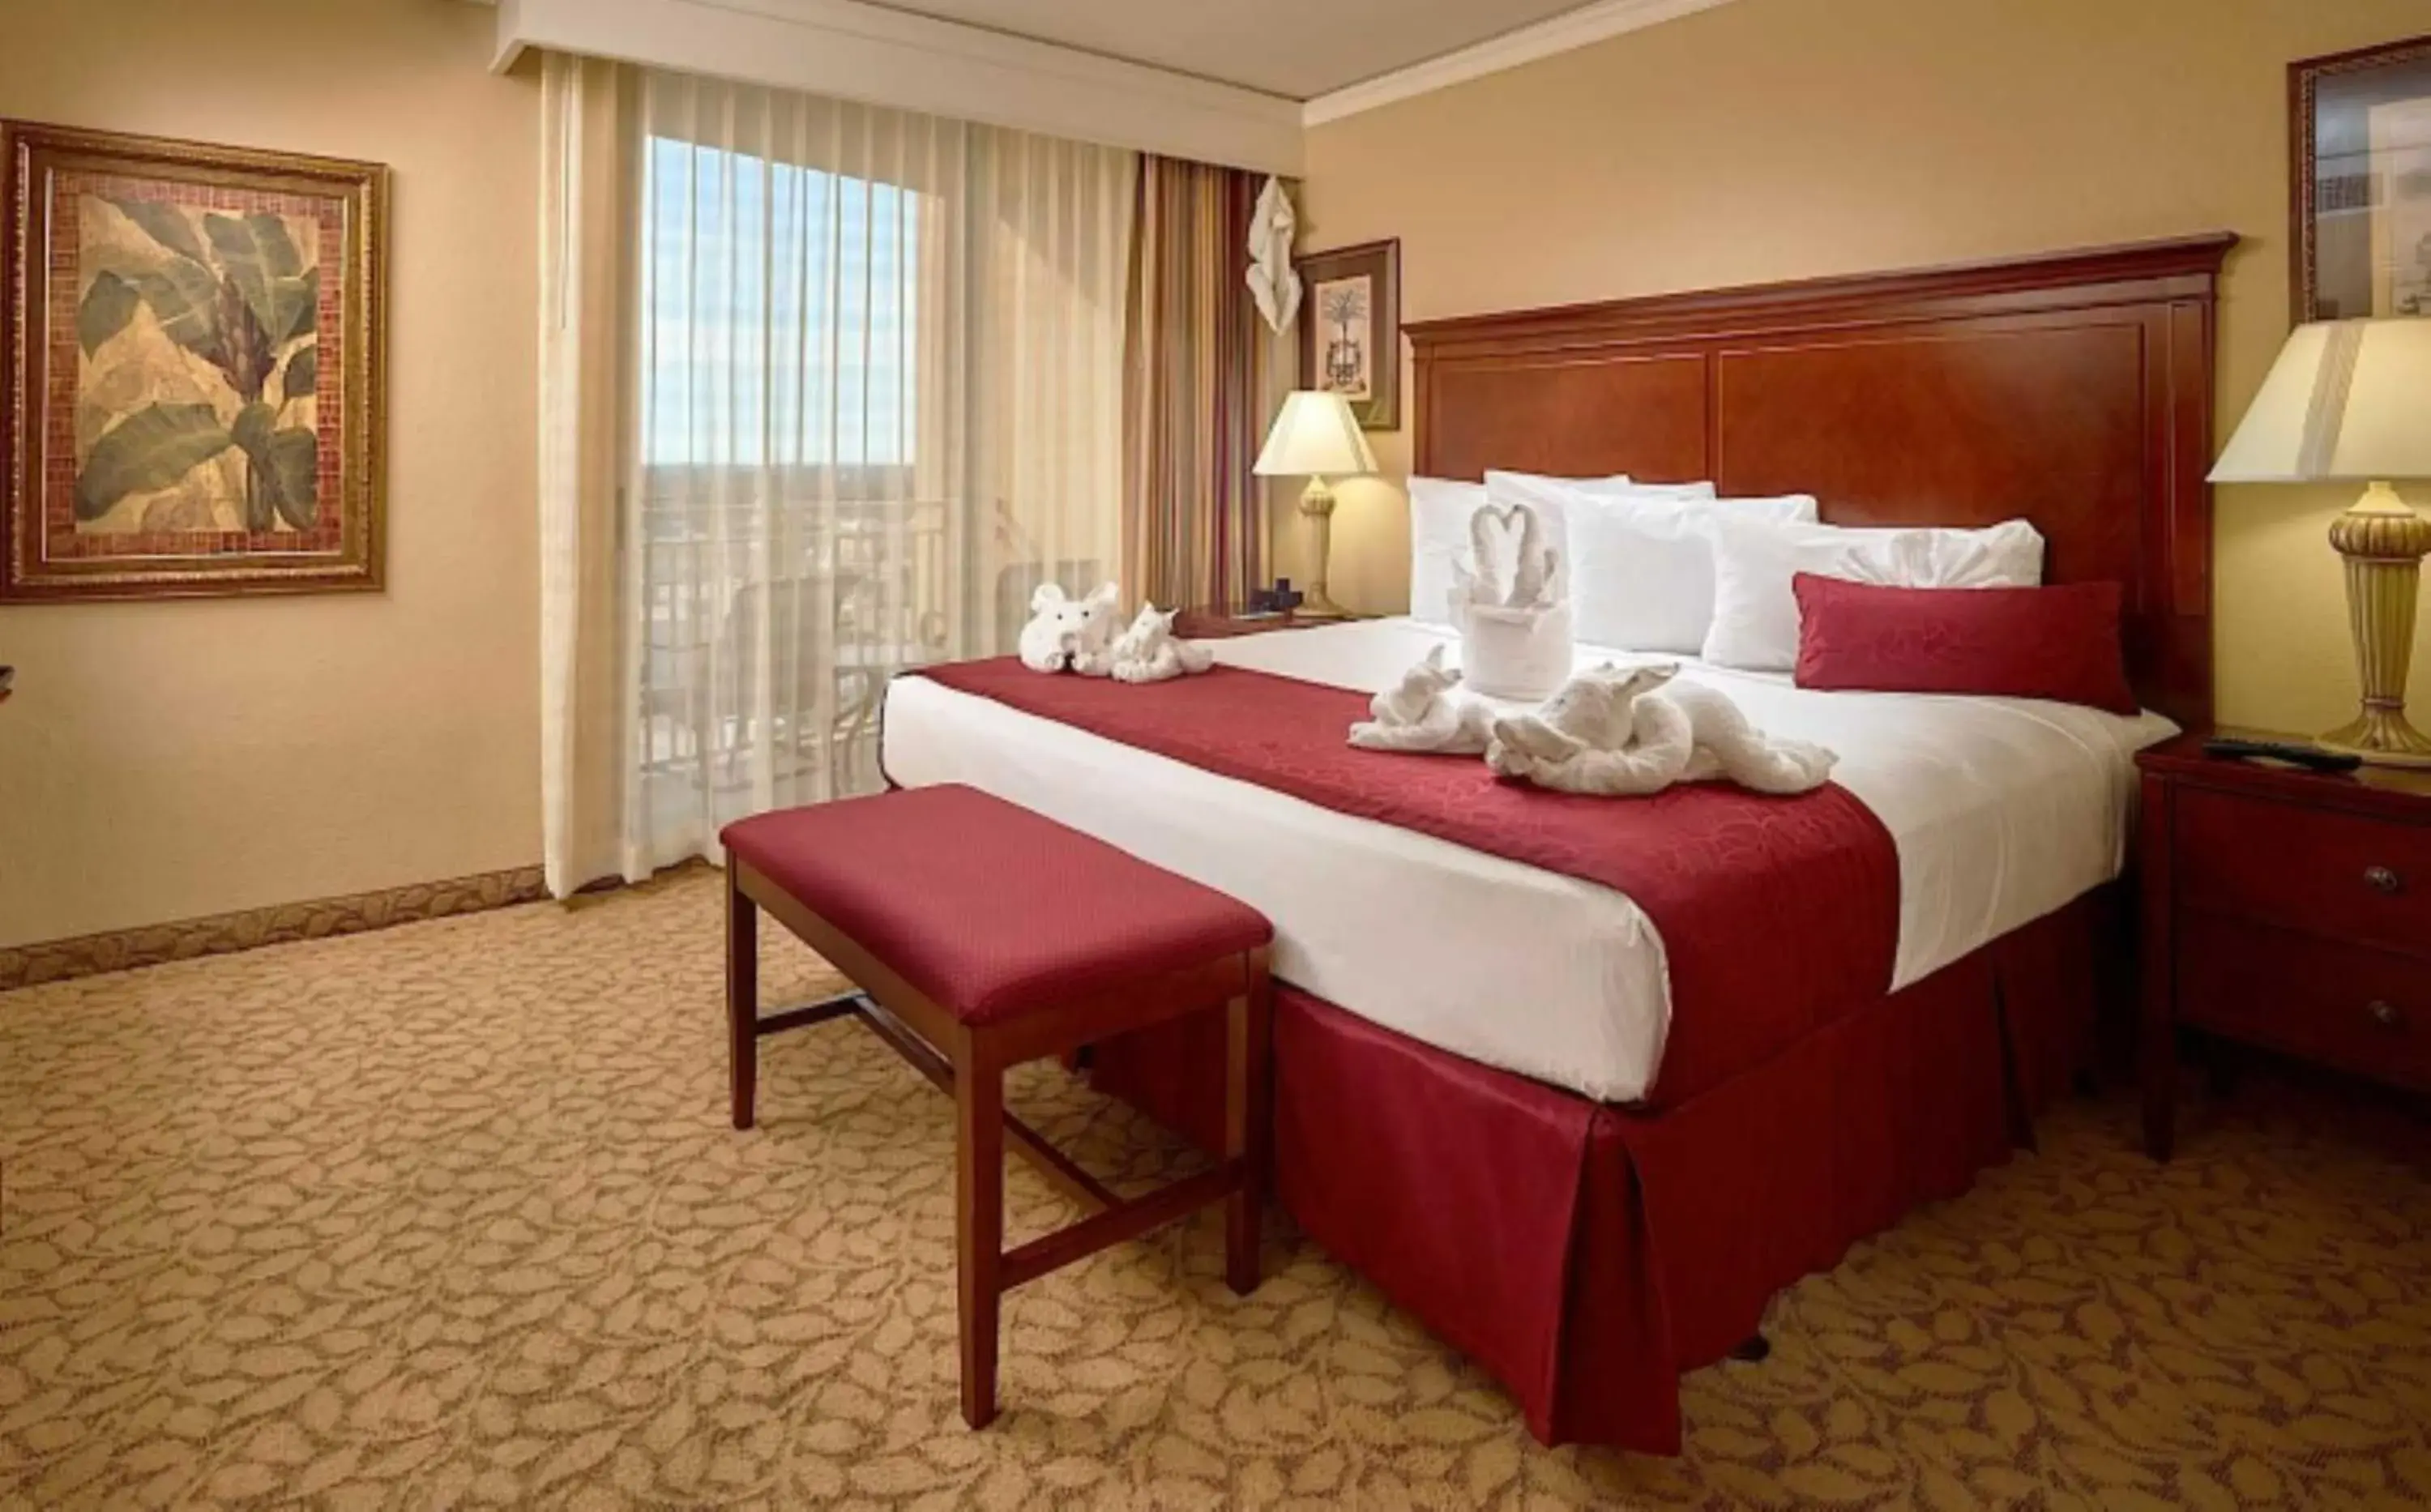 Bedroom in Plaza Resort & Spa